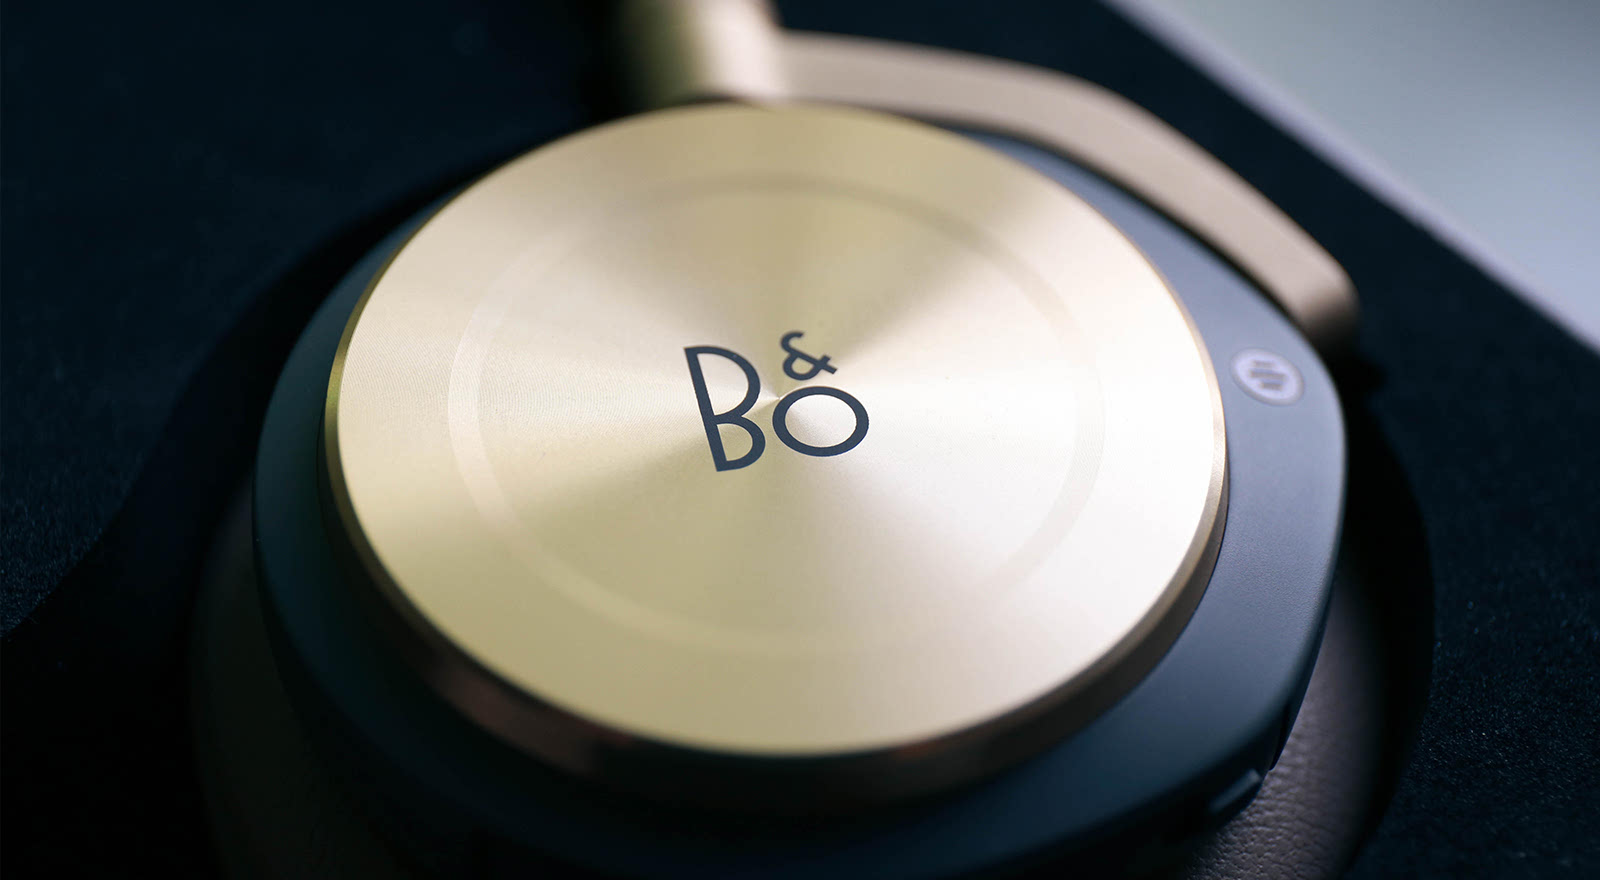 奢华与音质并存:B&O BeoPlay H8 蓝牙无线耳机